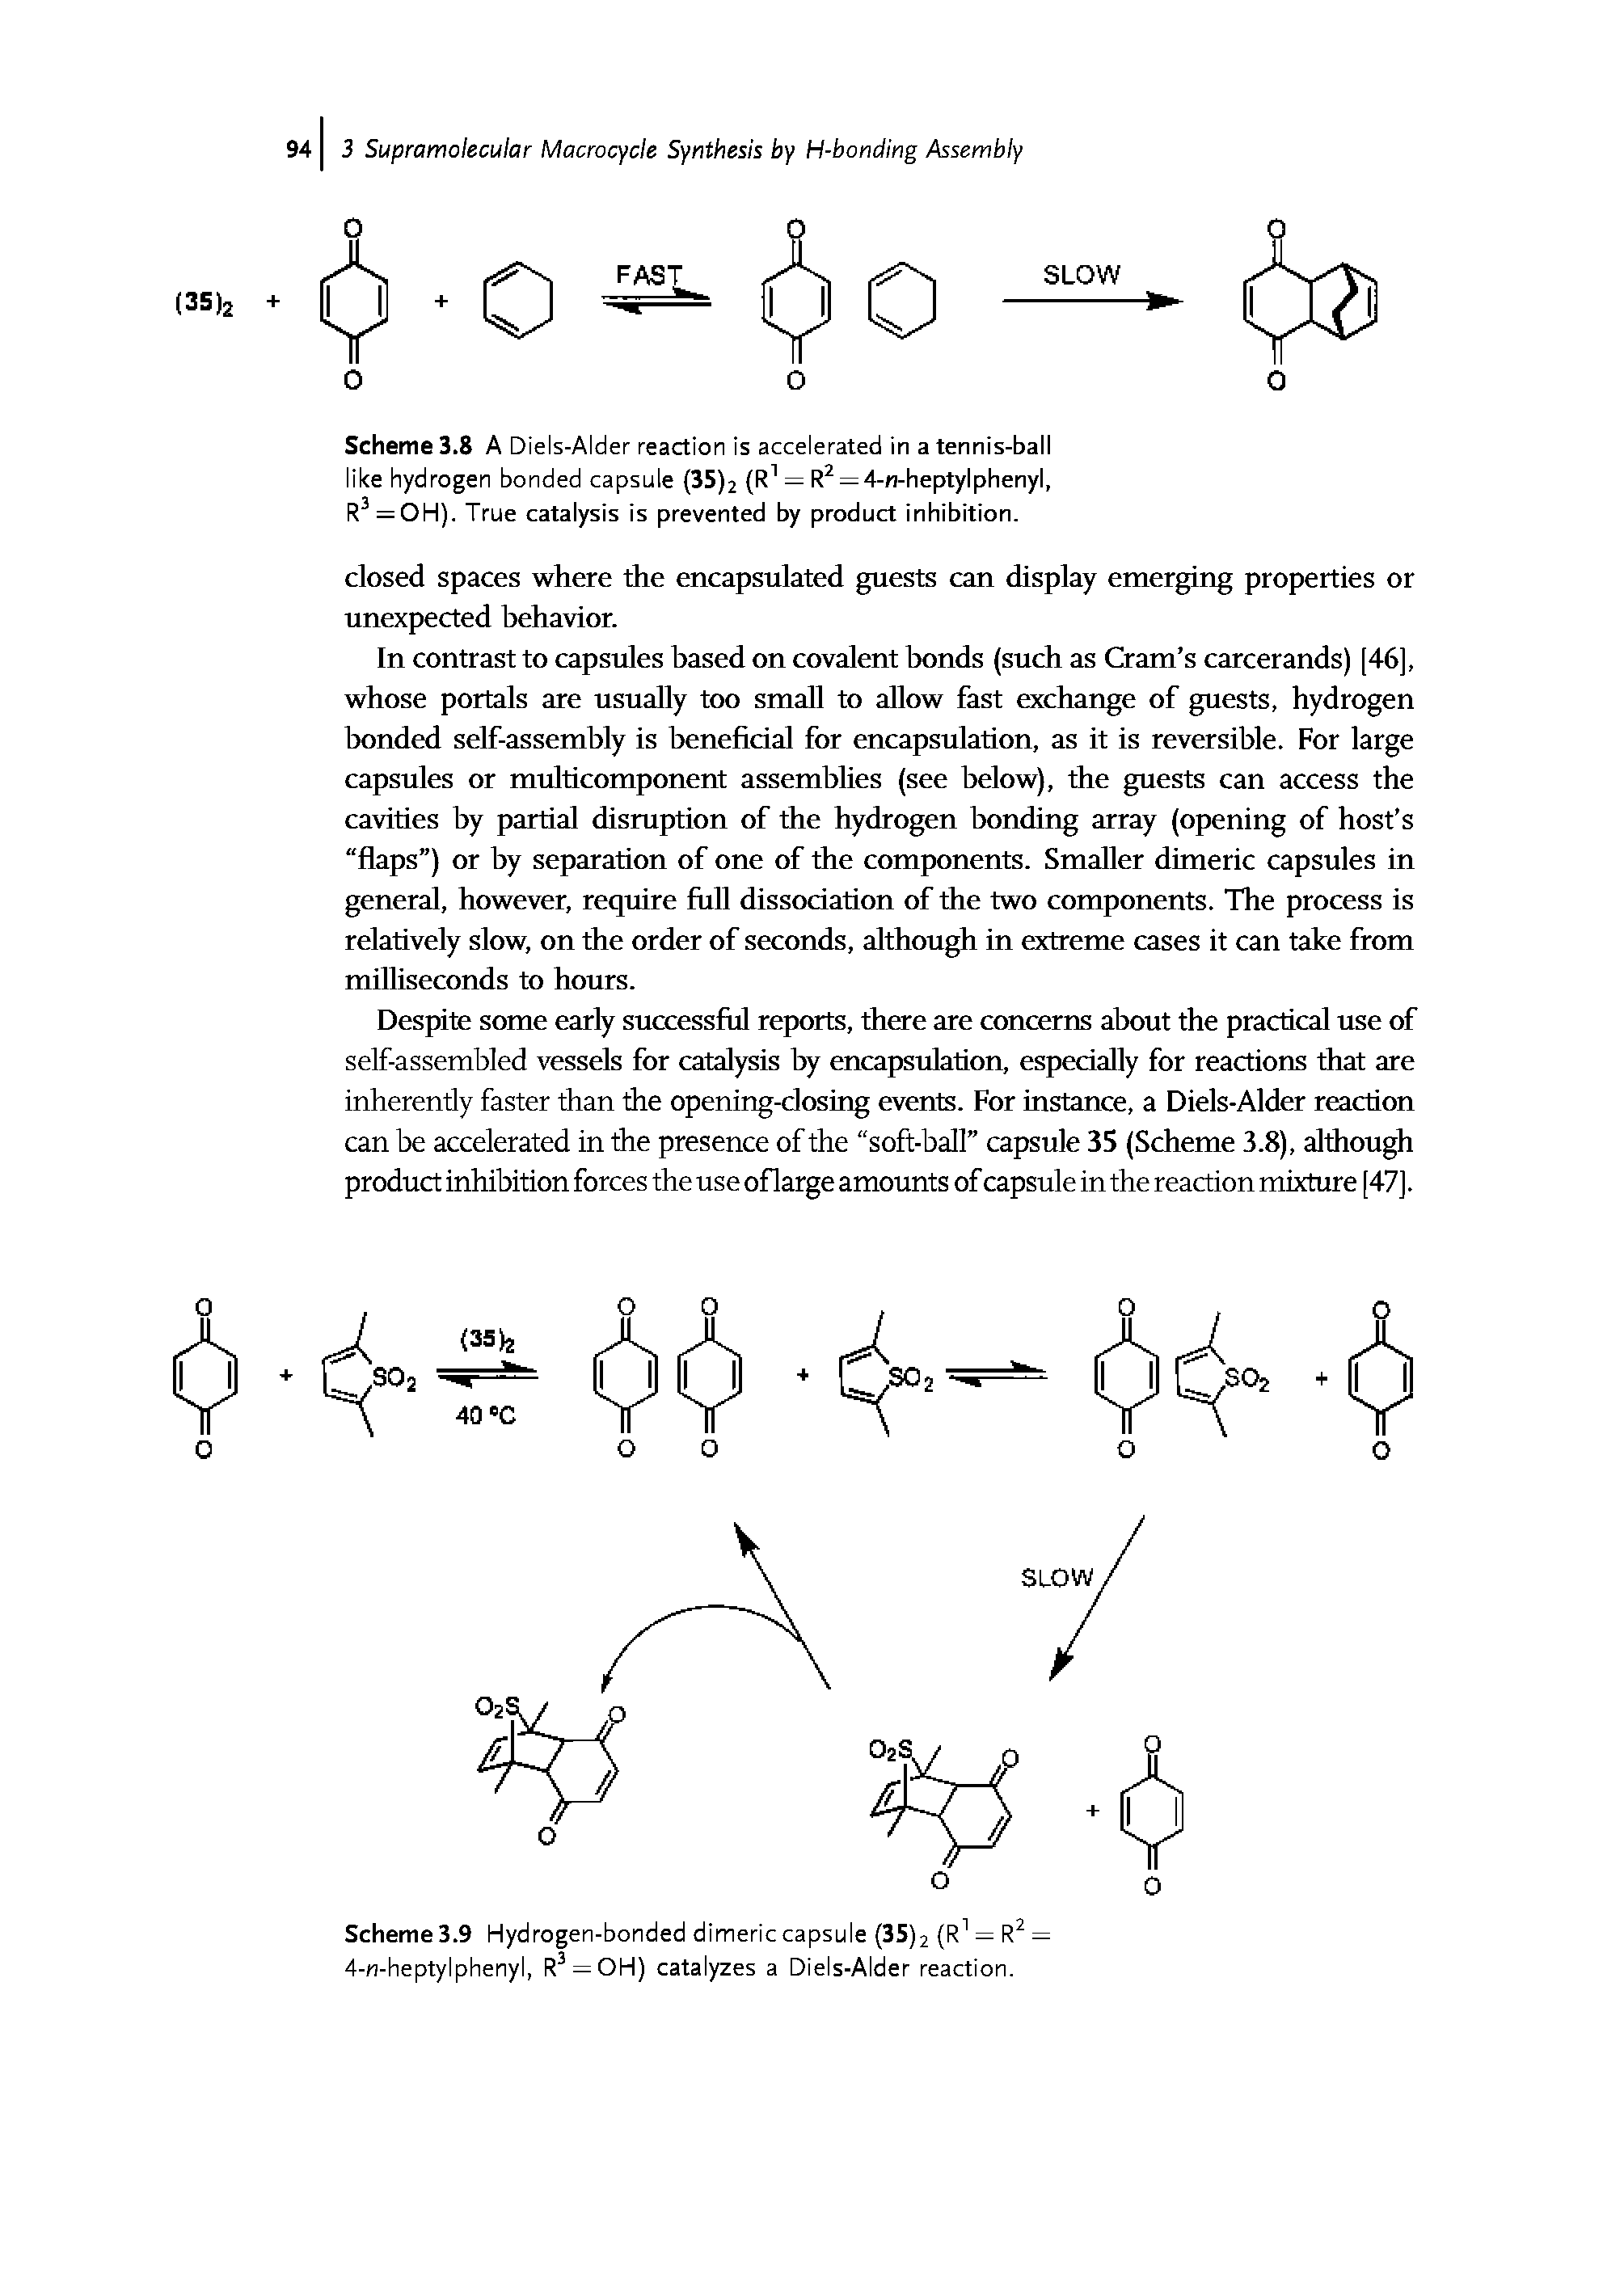 Scheme 3.9 Hydrogen-bonded dimeric capsule (35)2 (R1 = R2 = 4-n-heptylphenyl, R3 = OH) catalyzes a Diels-Alder reaction.